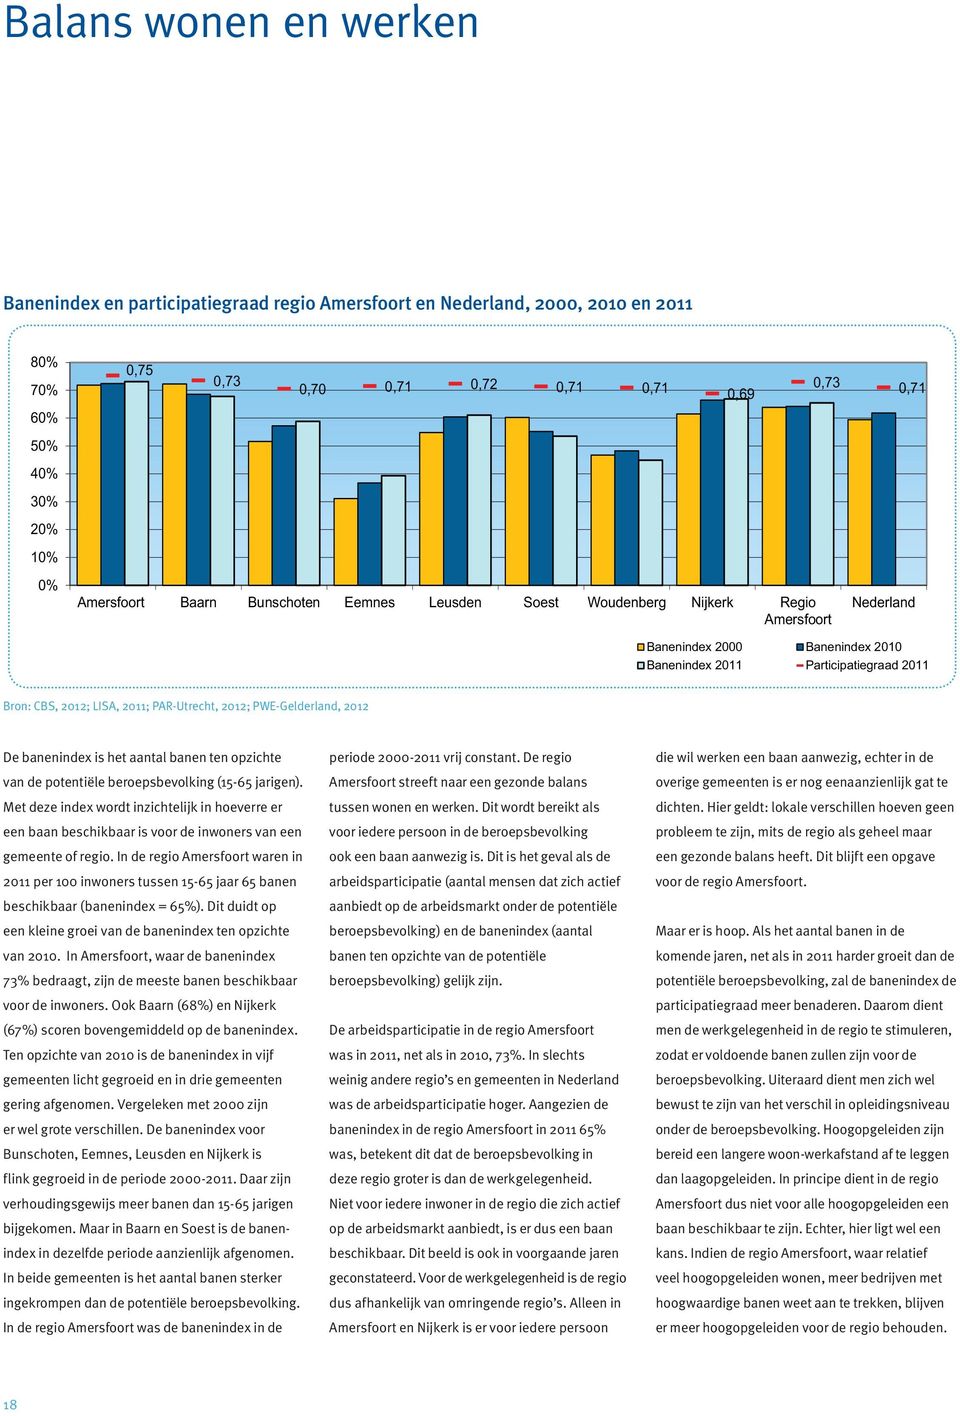 PAR-Utrecht, 2012; PWE-Gelderland, 2012 De banenindex is het aantal banen ten opzichte van de potentiële beroepsbevolking (15-65 jarigen).